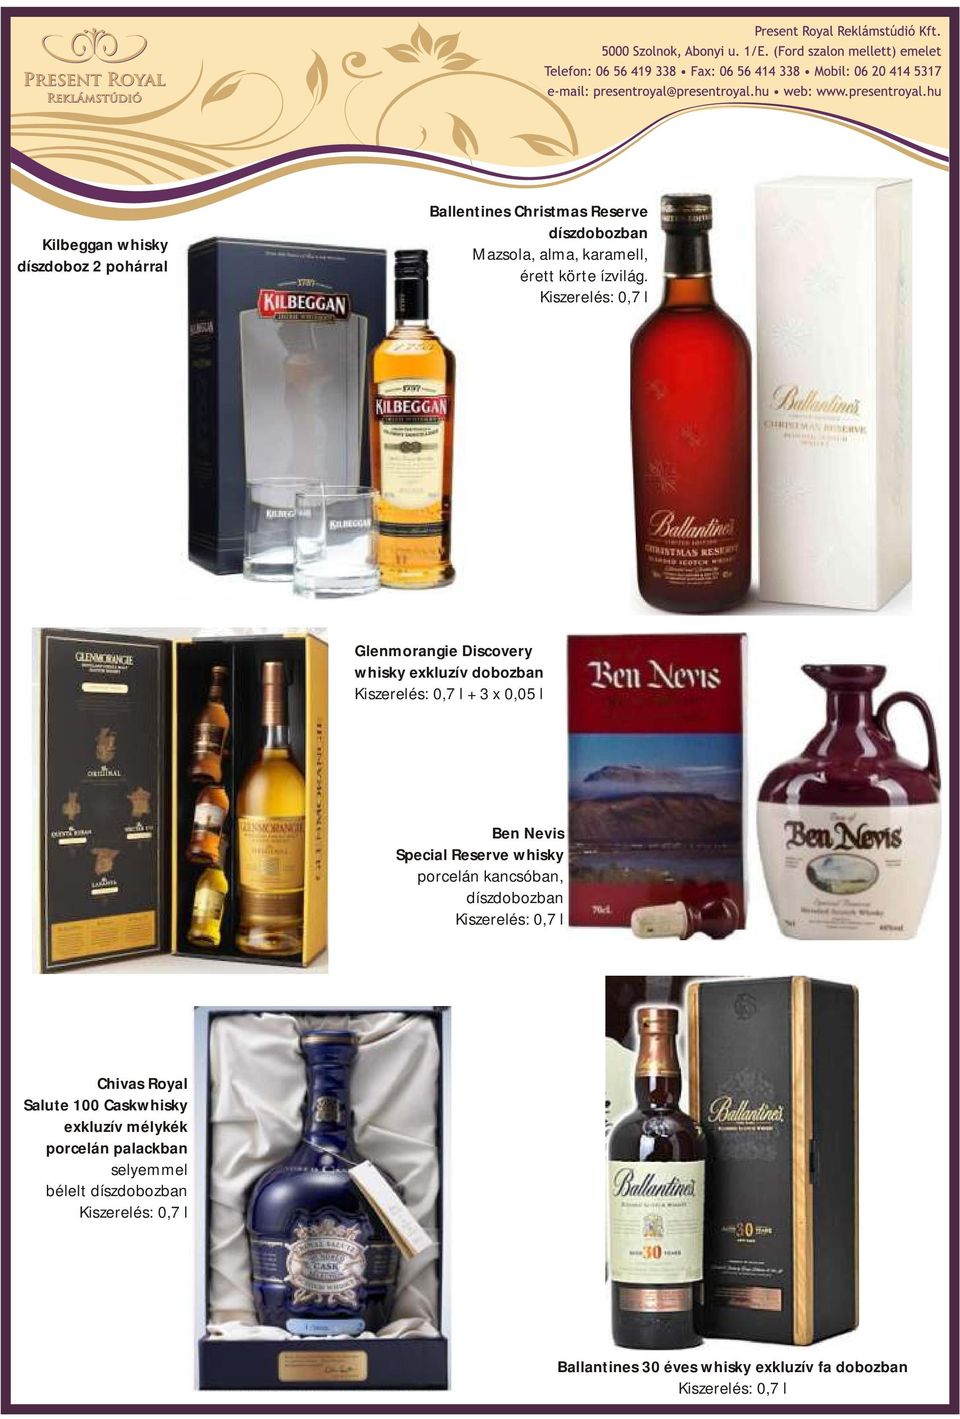 Glenmorangie Discovery whisky exkluzív dobozban + 3 x 0,05 l Ben Nevis Special Reserve